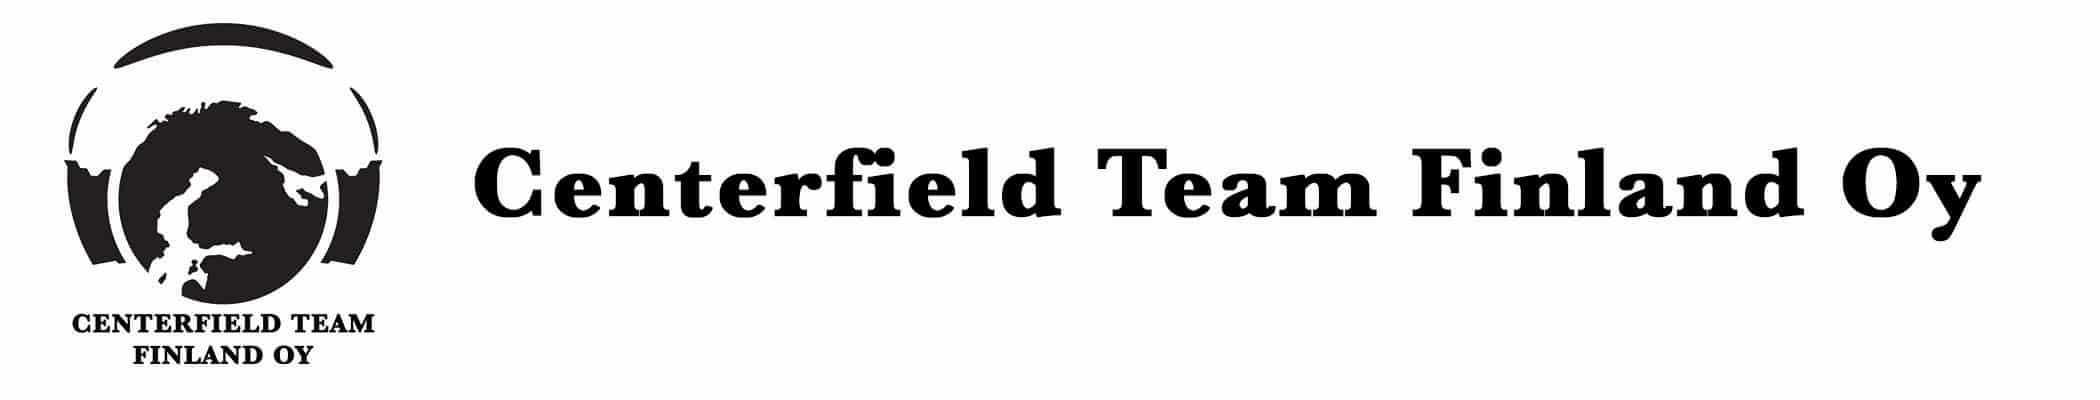 Centerfield_team_finland_logo